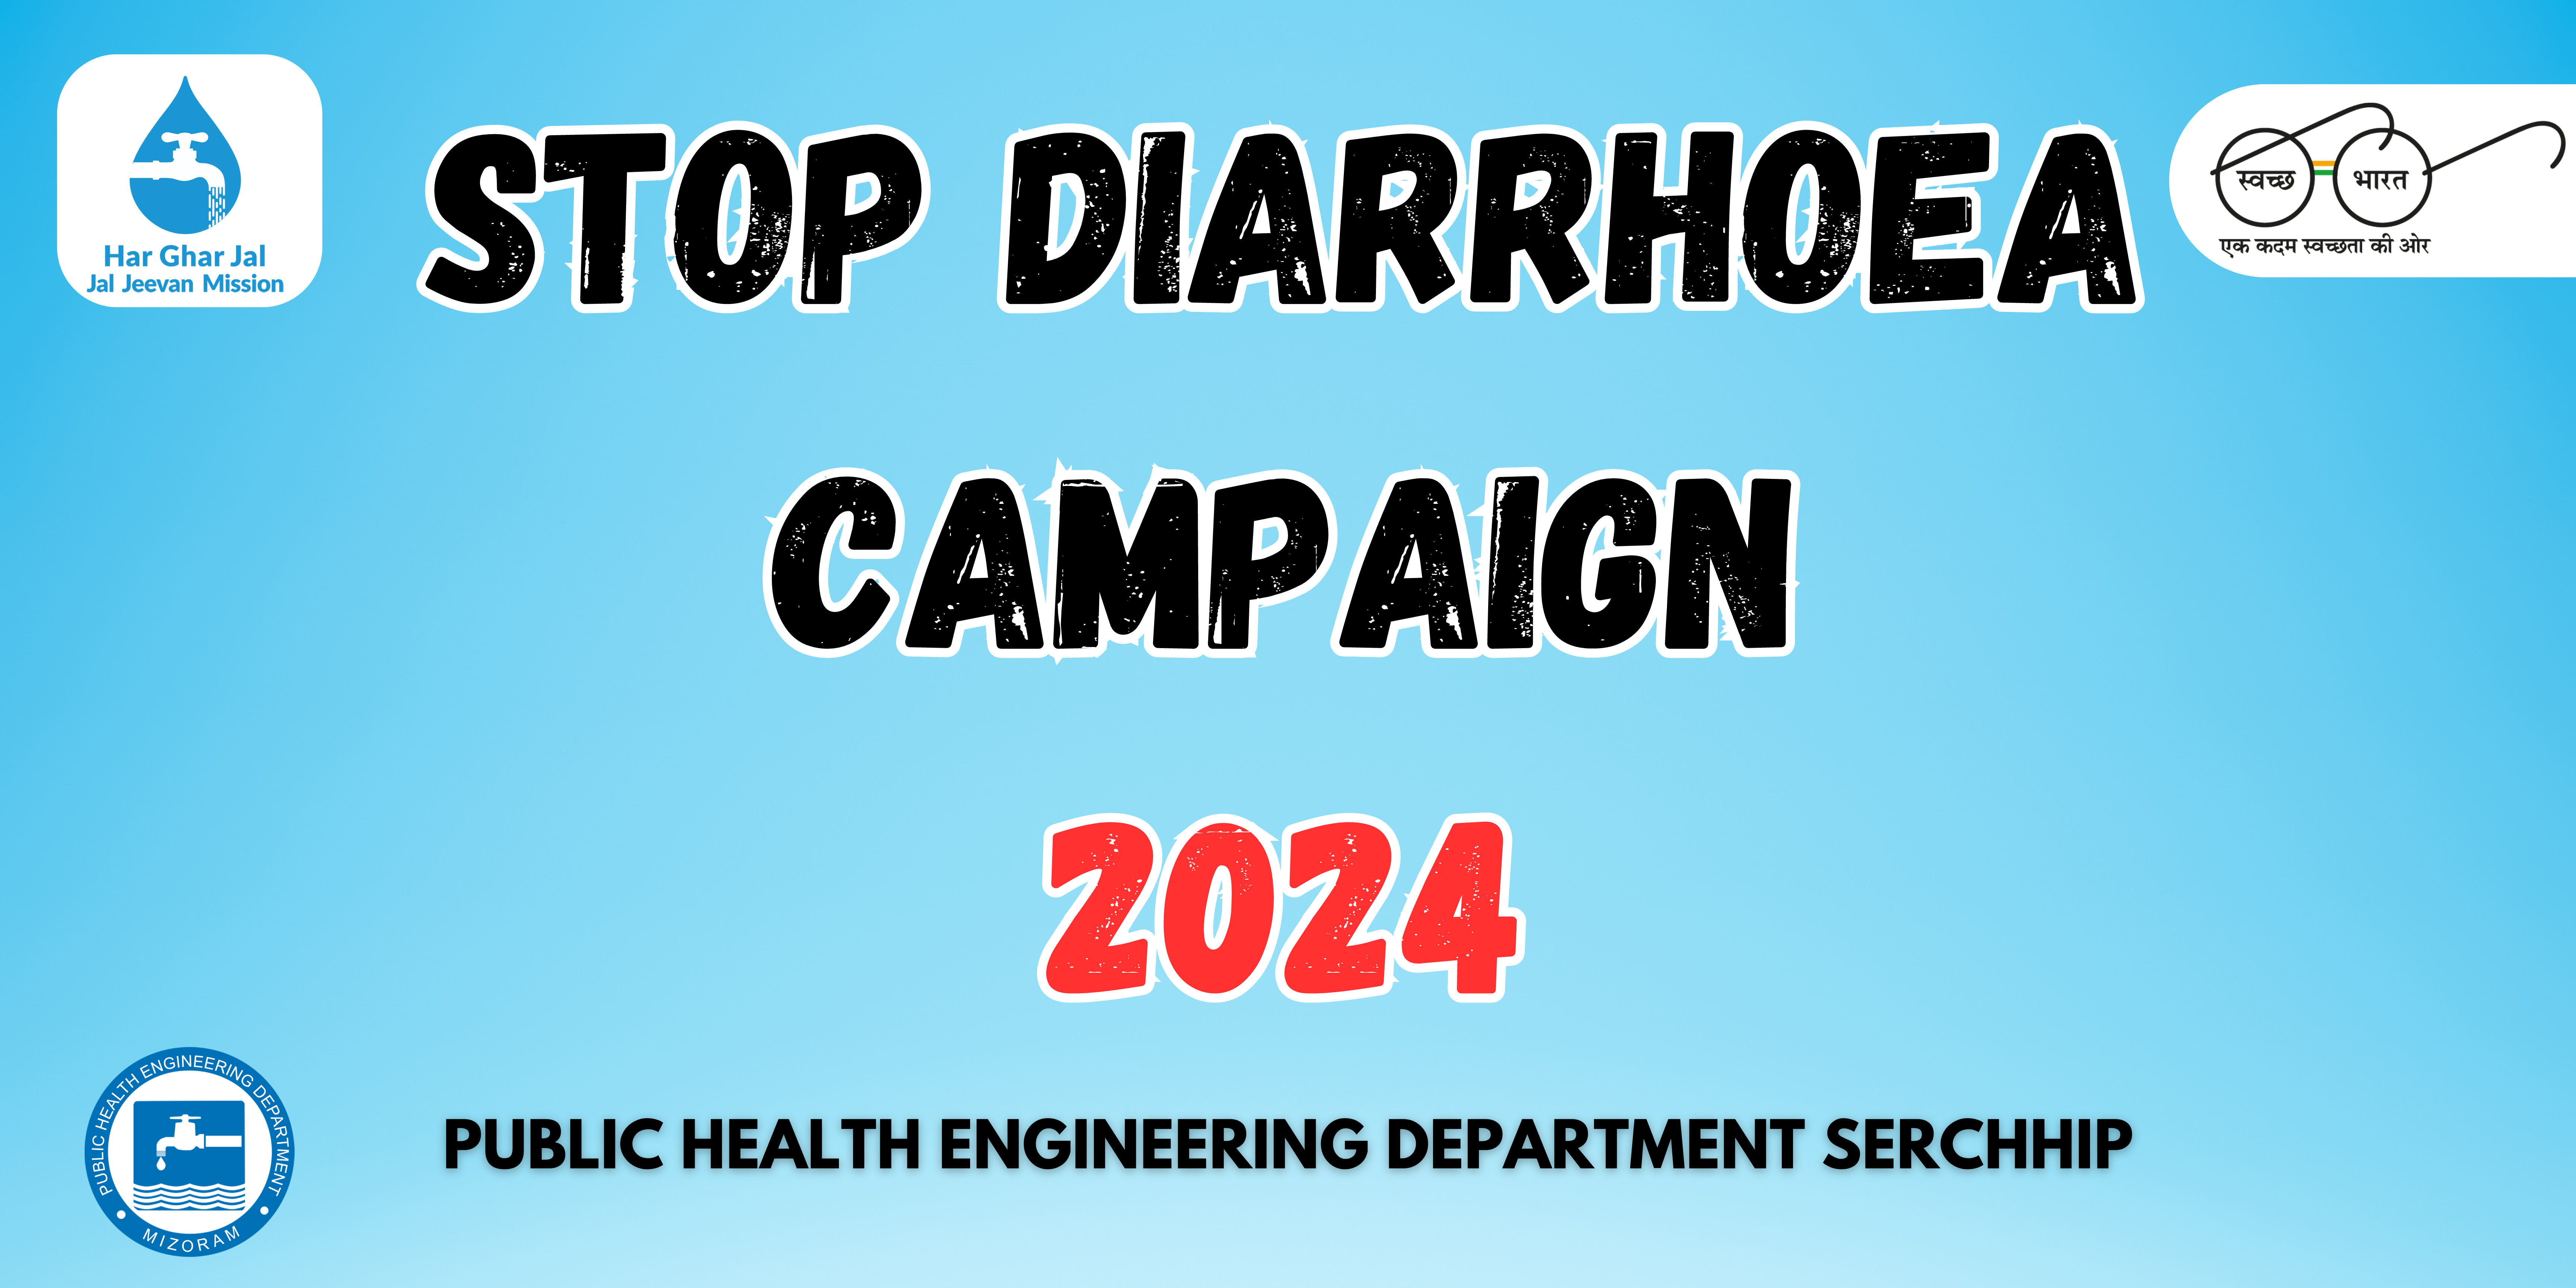 STOP DIARRHOEA CAMPAIGN 2024